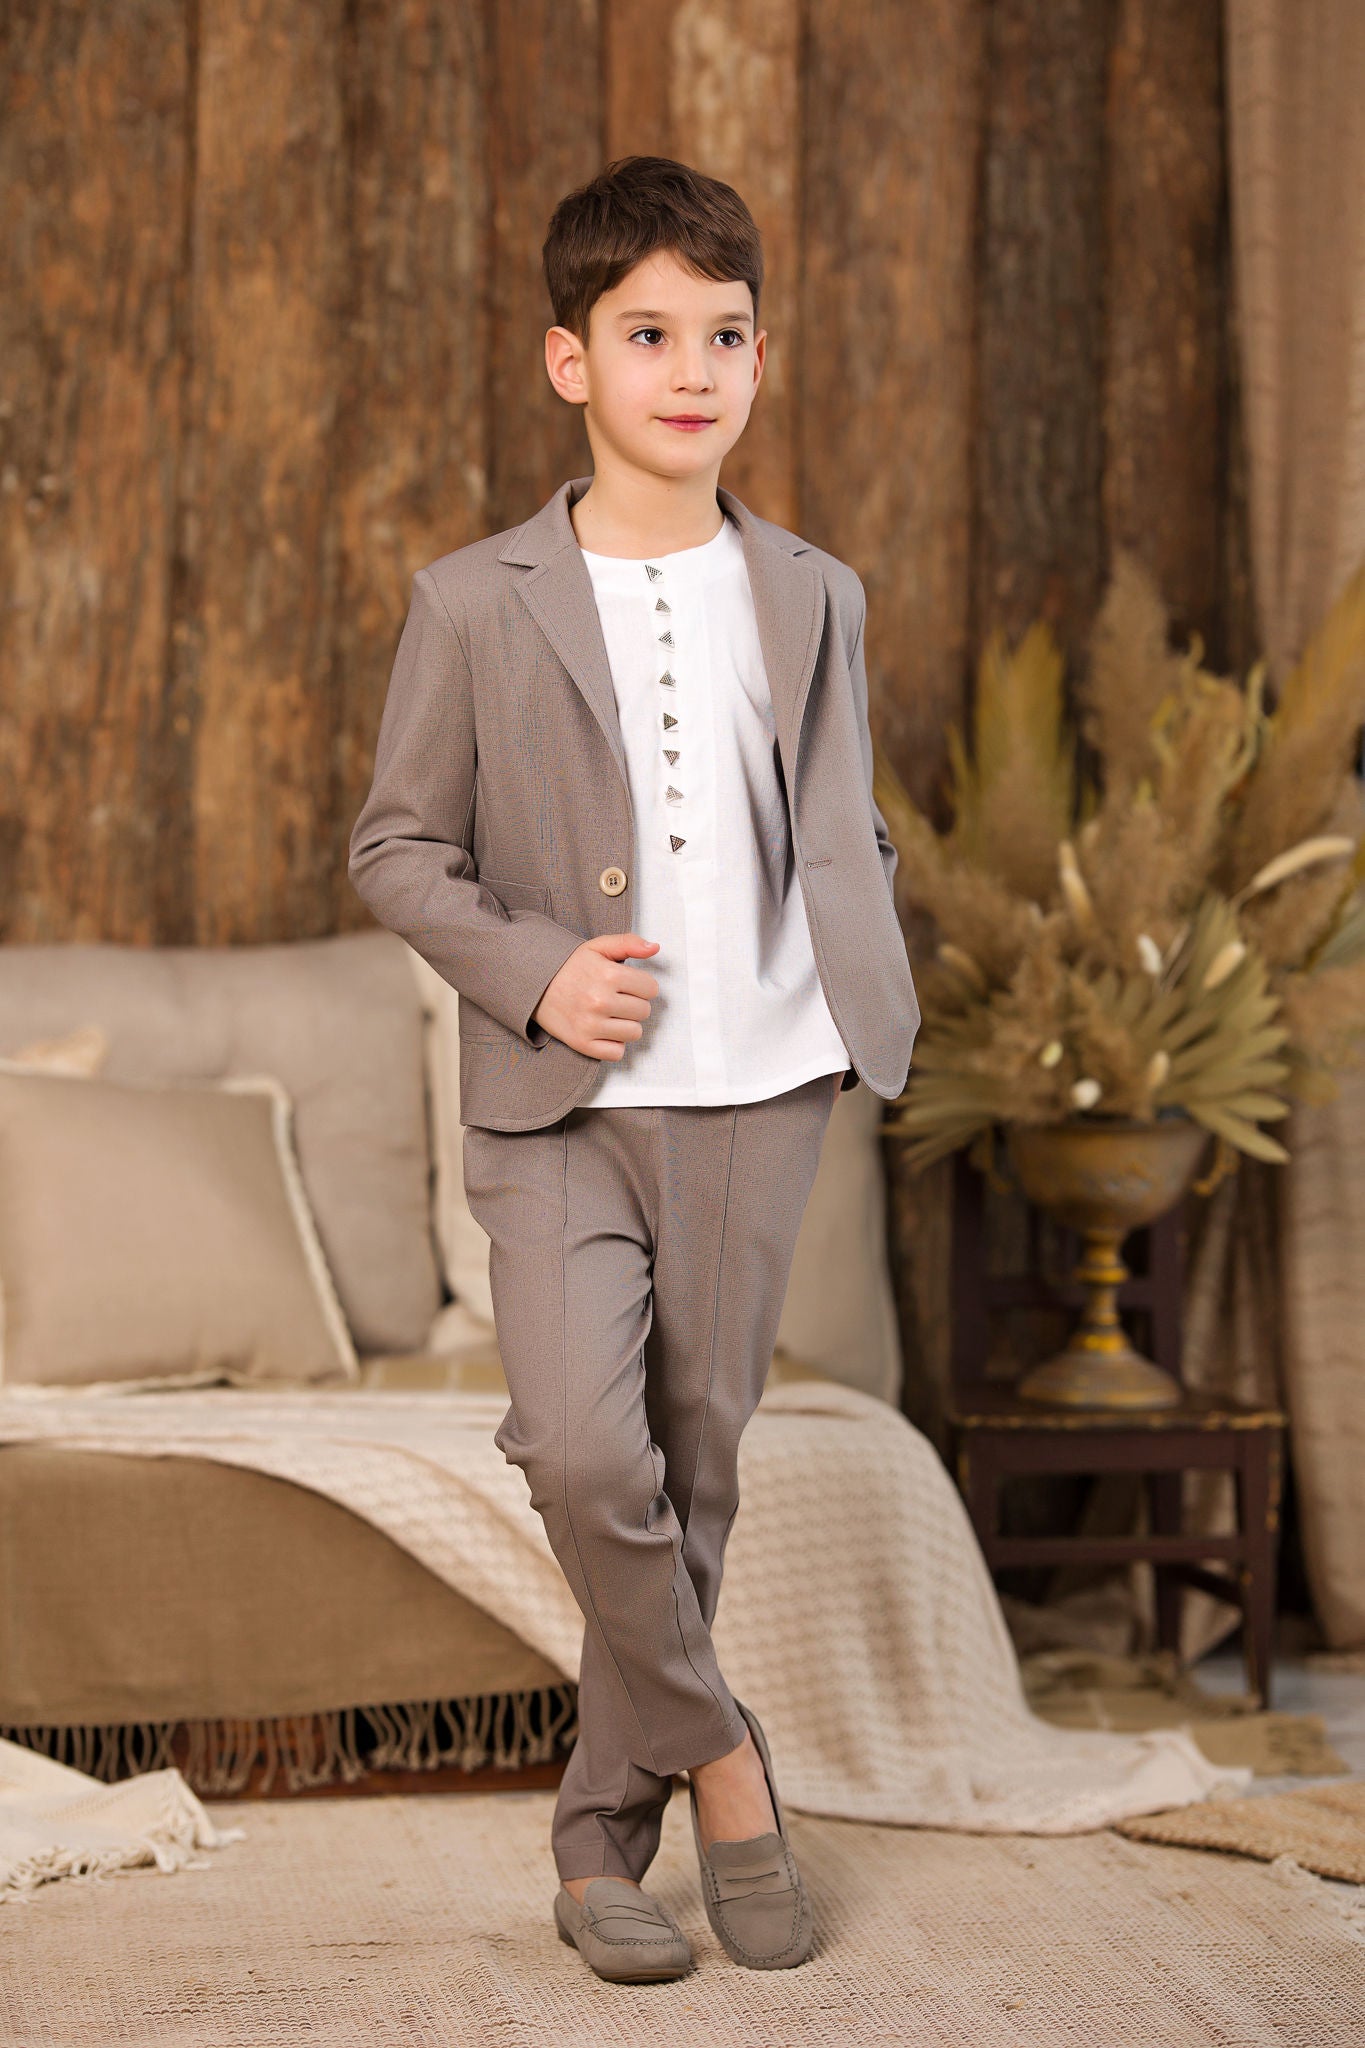 Charming Linen Suit for Boys: Greige Color